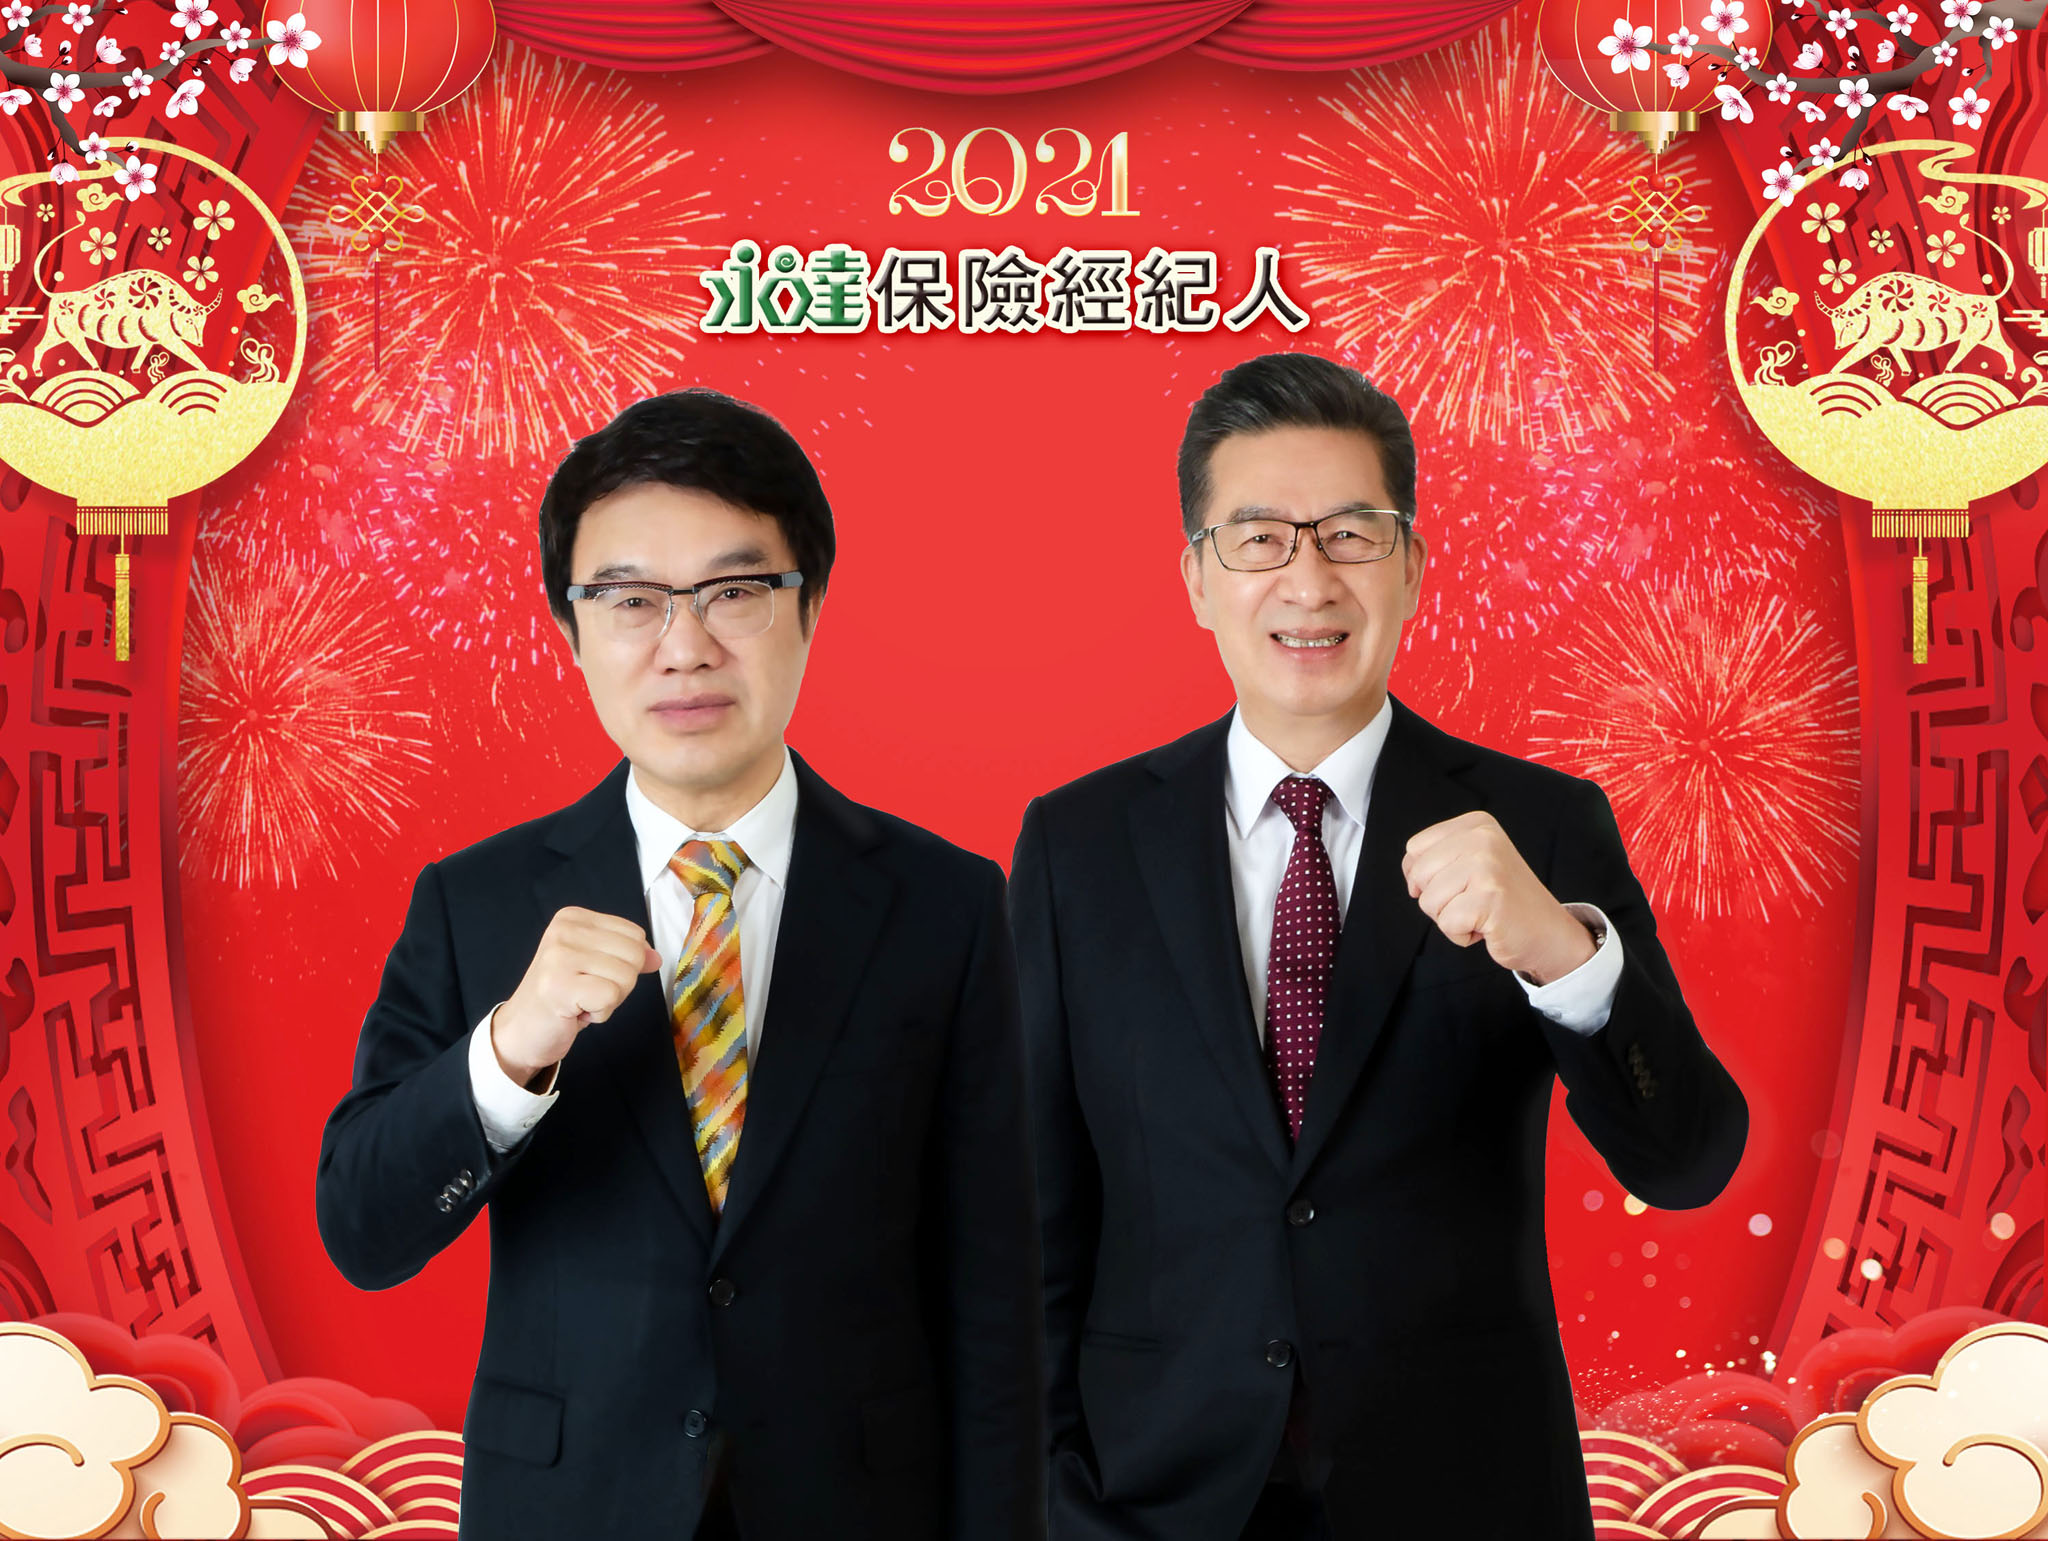 永達吳文永董事長（左）、陳慶鴻總經理（右），2021永達20週年，凝心聚力、眾志成城，迎接下一個飛黃騰達新時代。